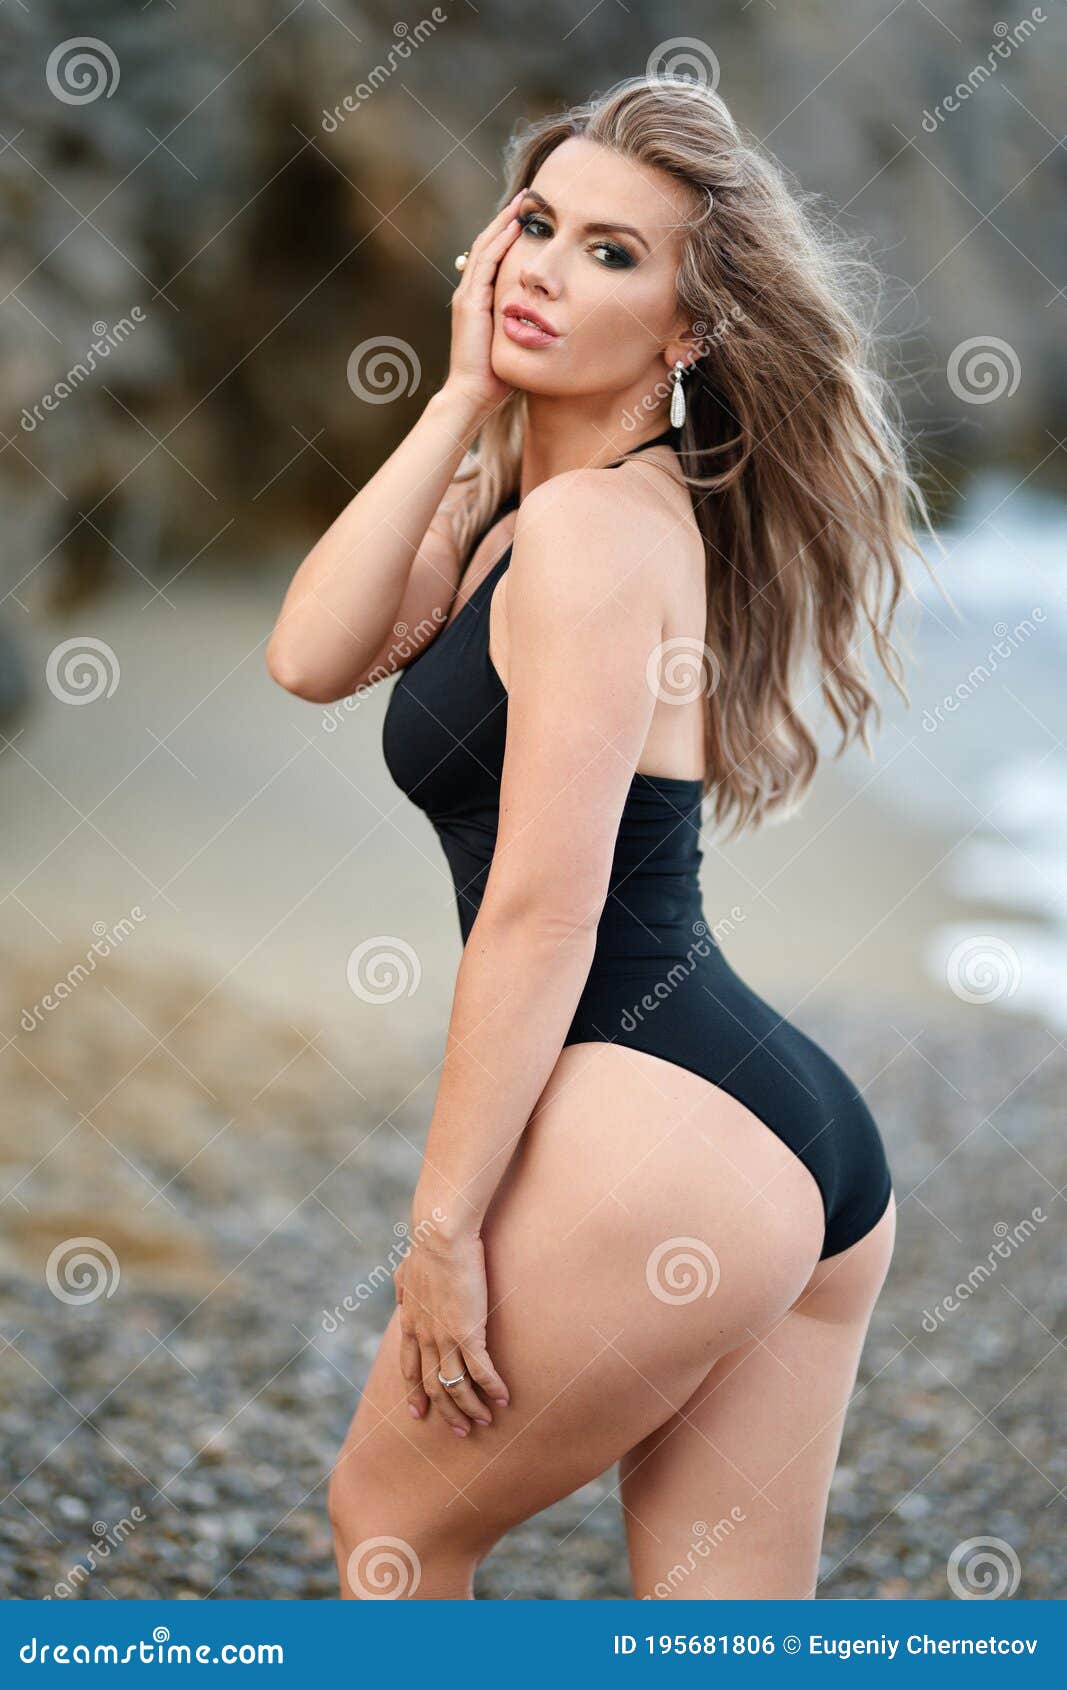 Photos sexy ass 50 Hottest